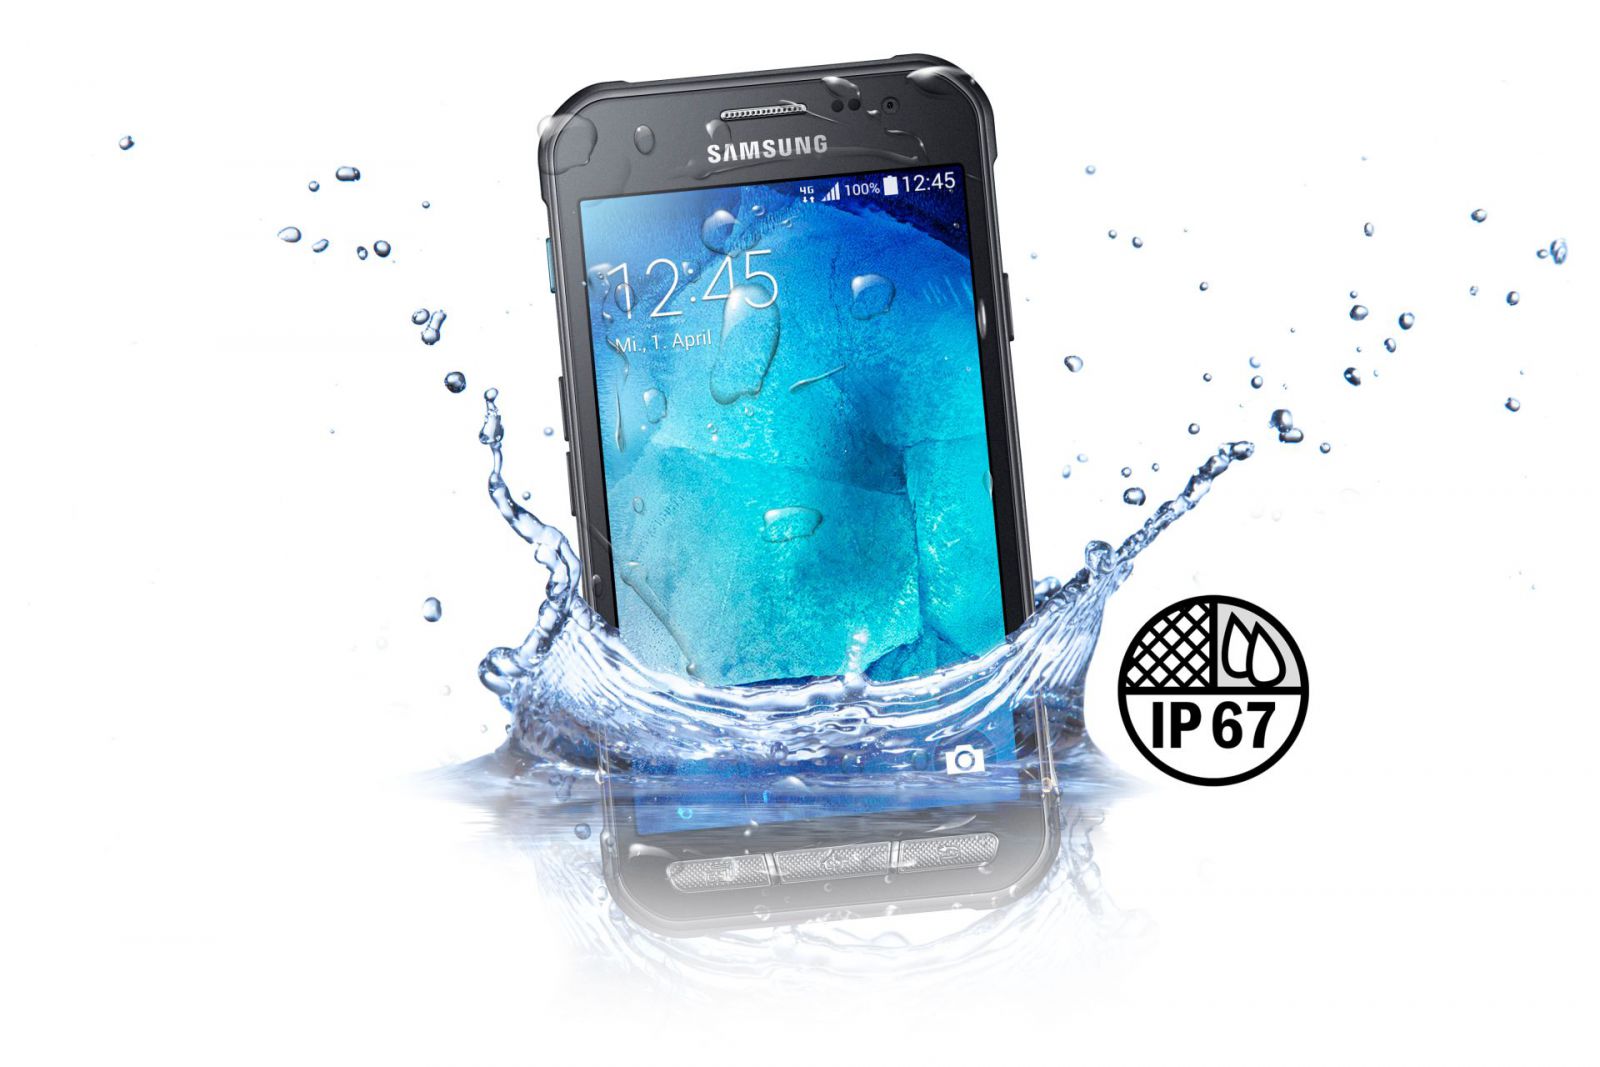 Galaxy Xcover 3 taucht in Wasser ein